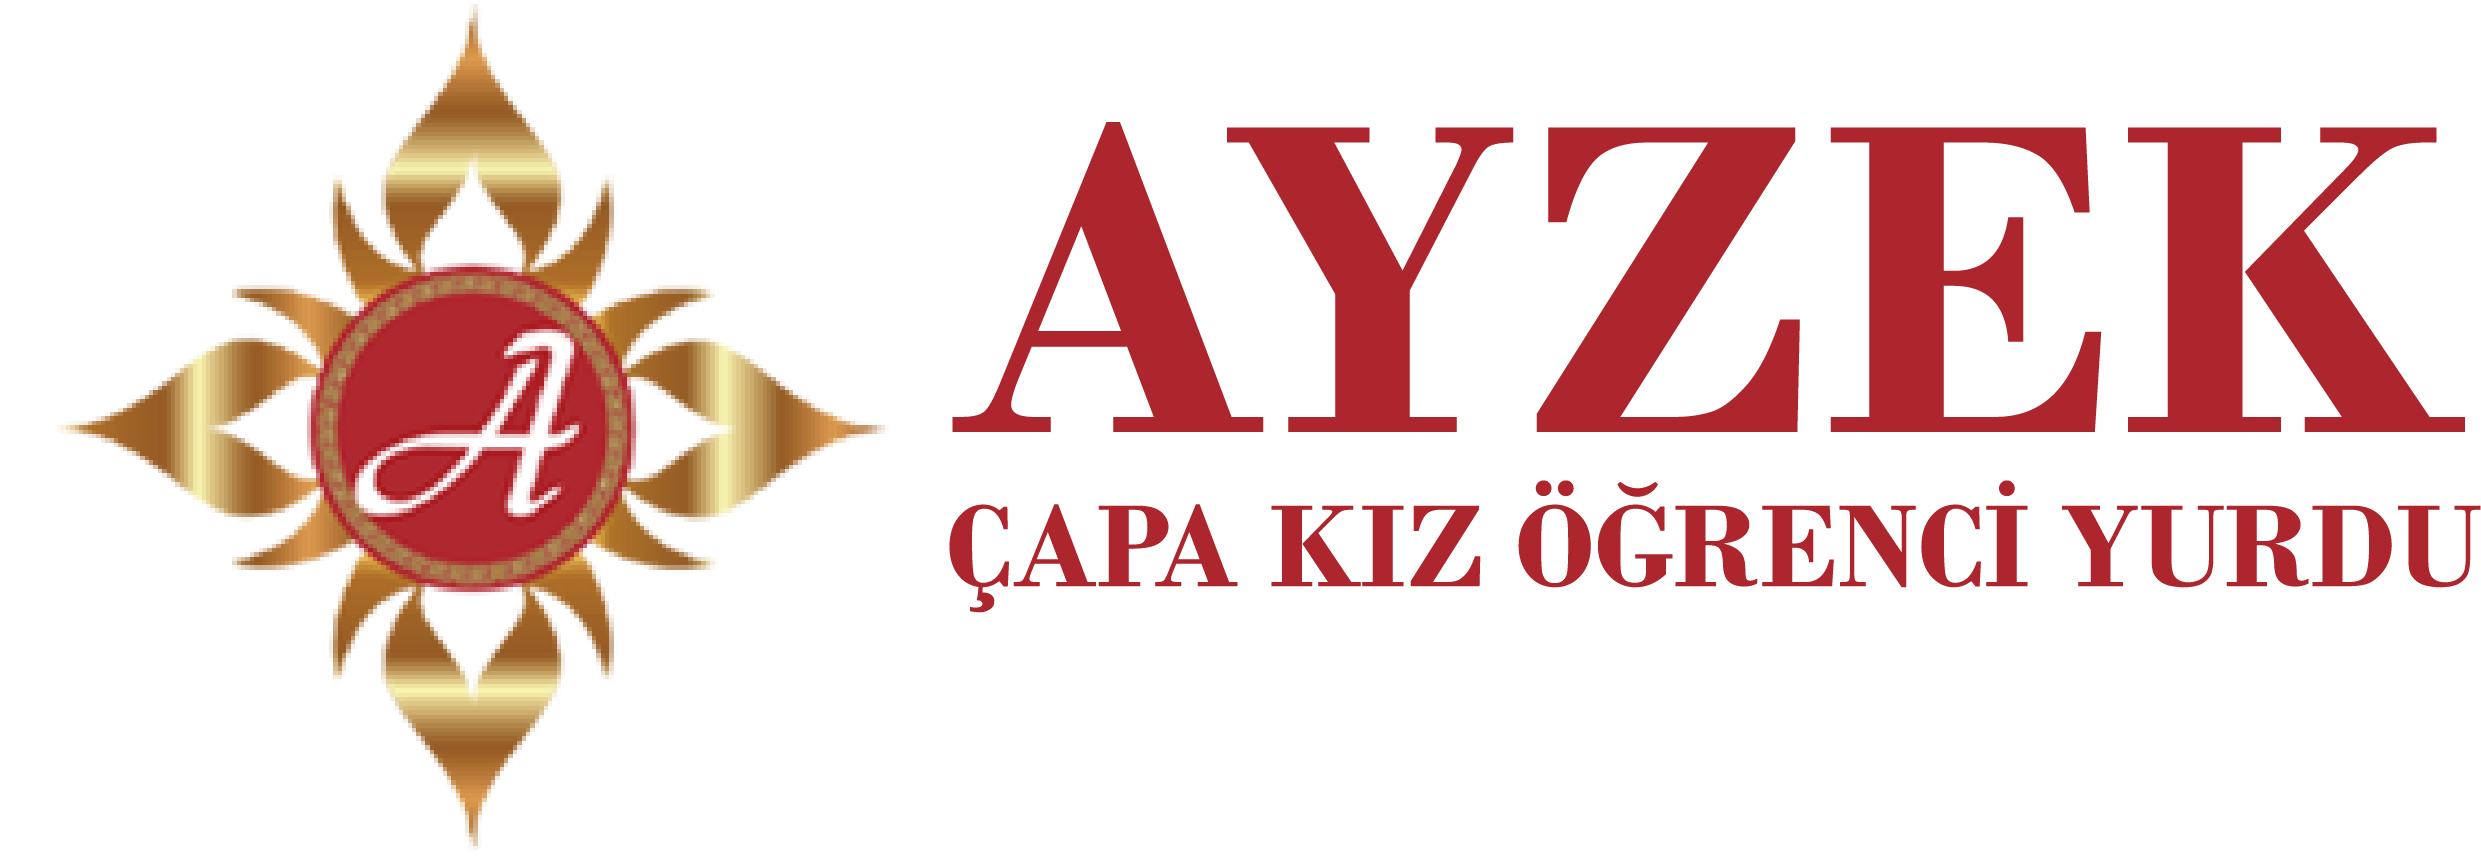 Ayzek Kız Öğrenci Yurdu logo